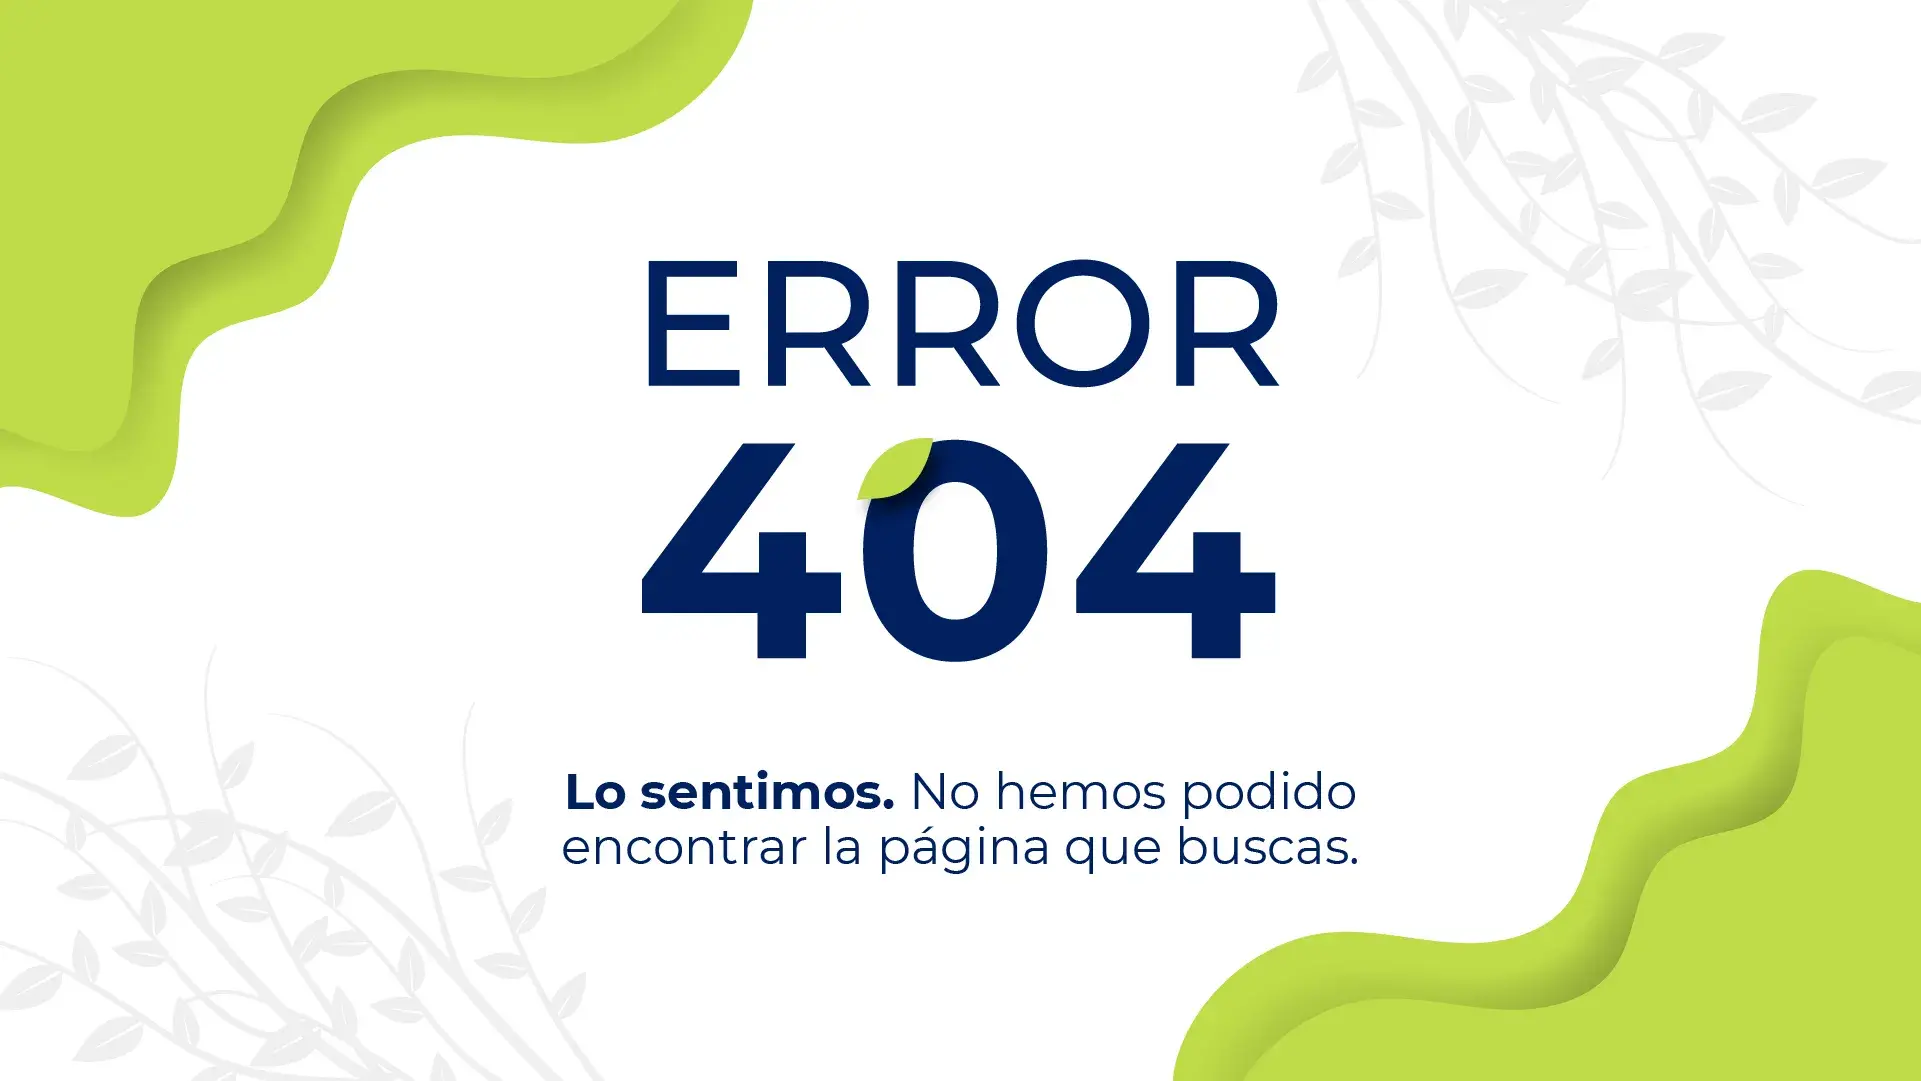 Error 404. Lo sentimos, no hemos podido encontrar la página que buscas.